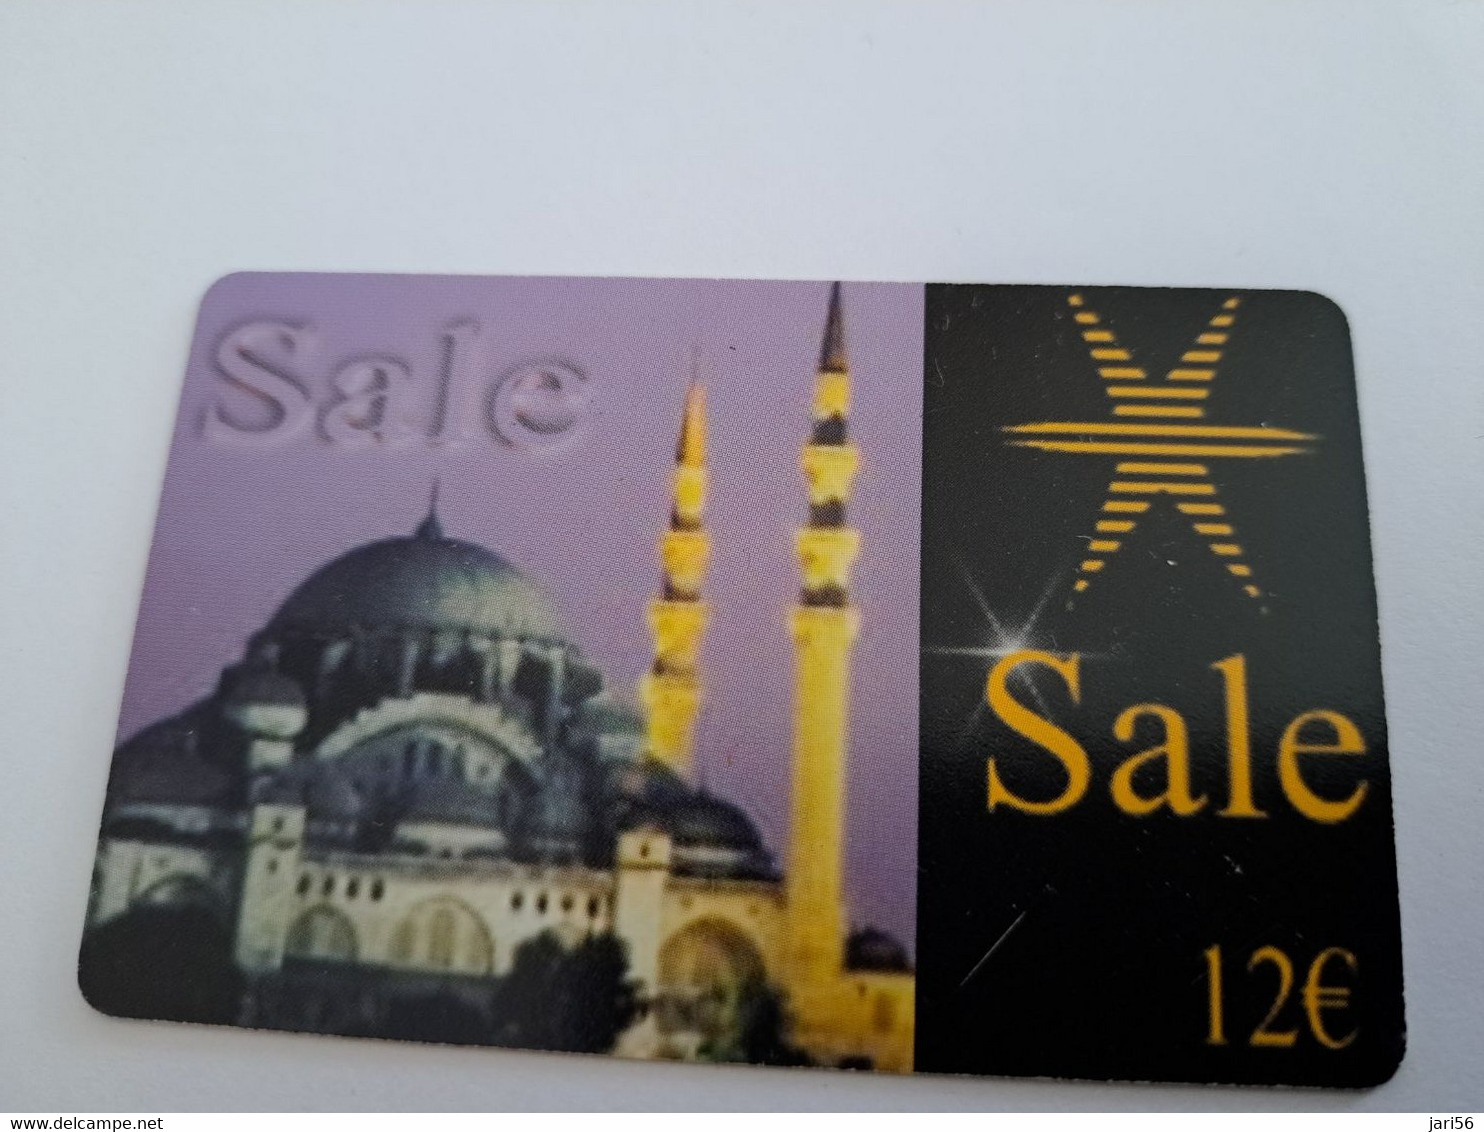 NETHERLANDS  /  € 12,- SALE / MOSKE        / OLDER CARD    PREPAID  Nice USED   ** 11221** - Cartes GSM, Prépayées Et Recharges